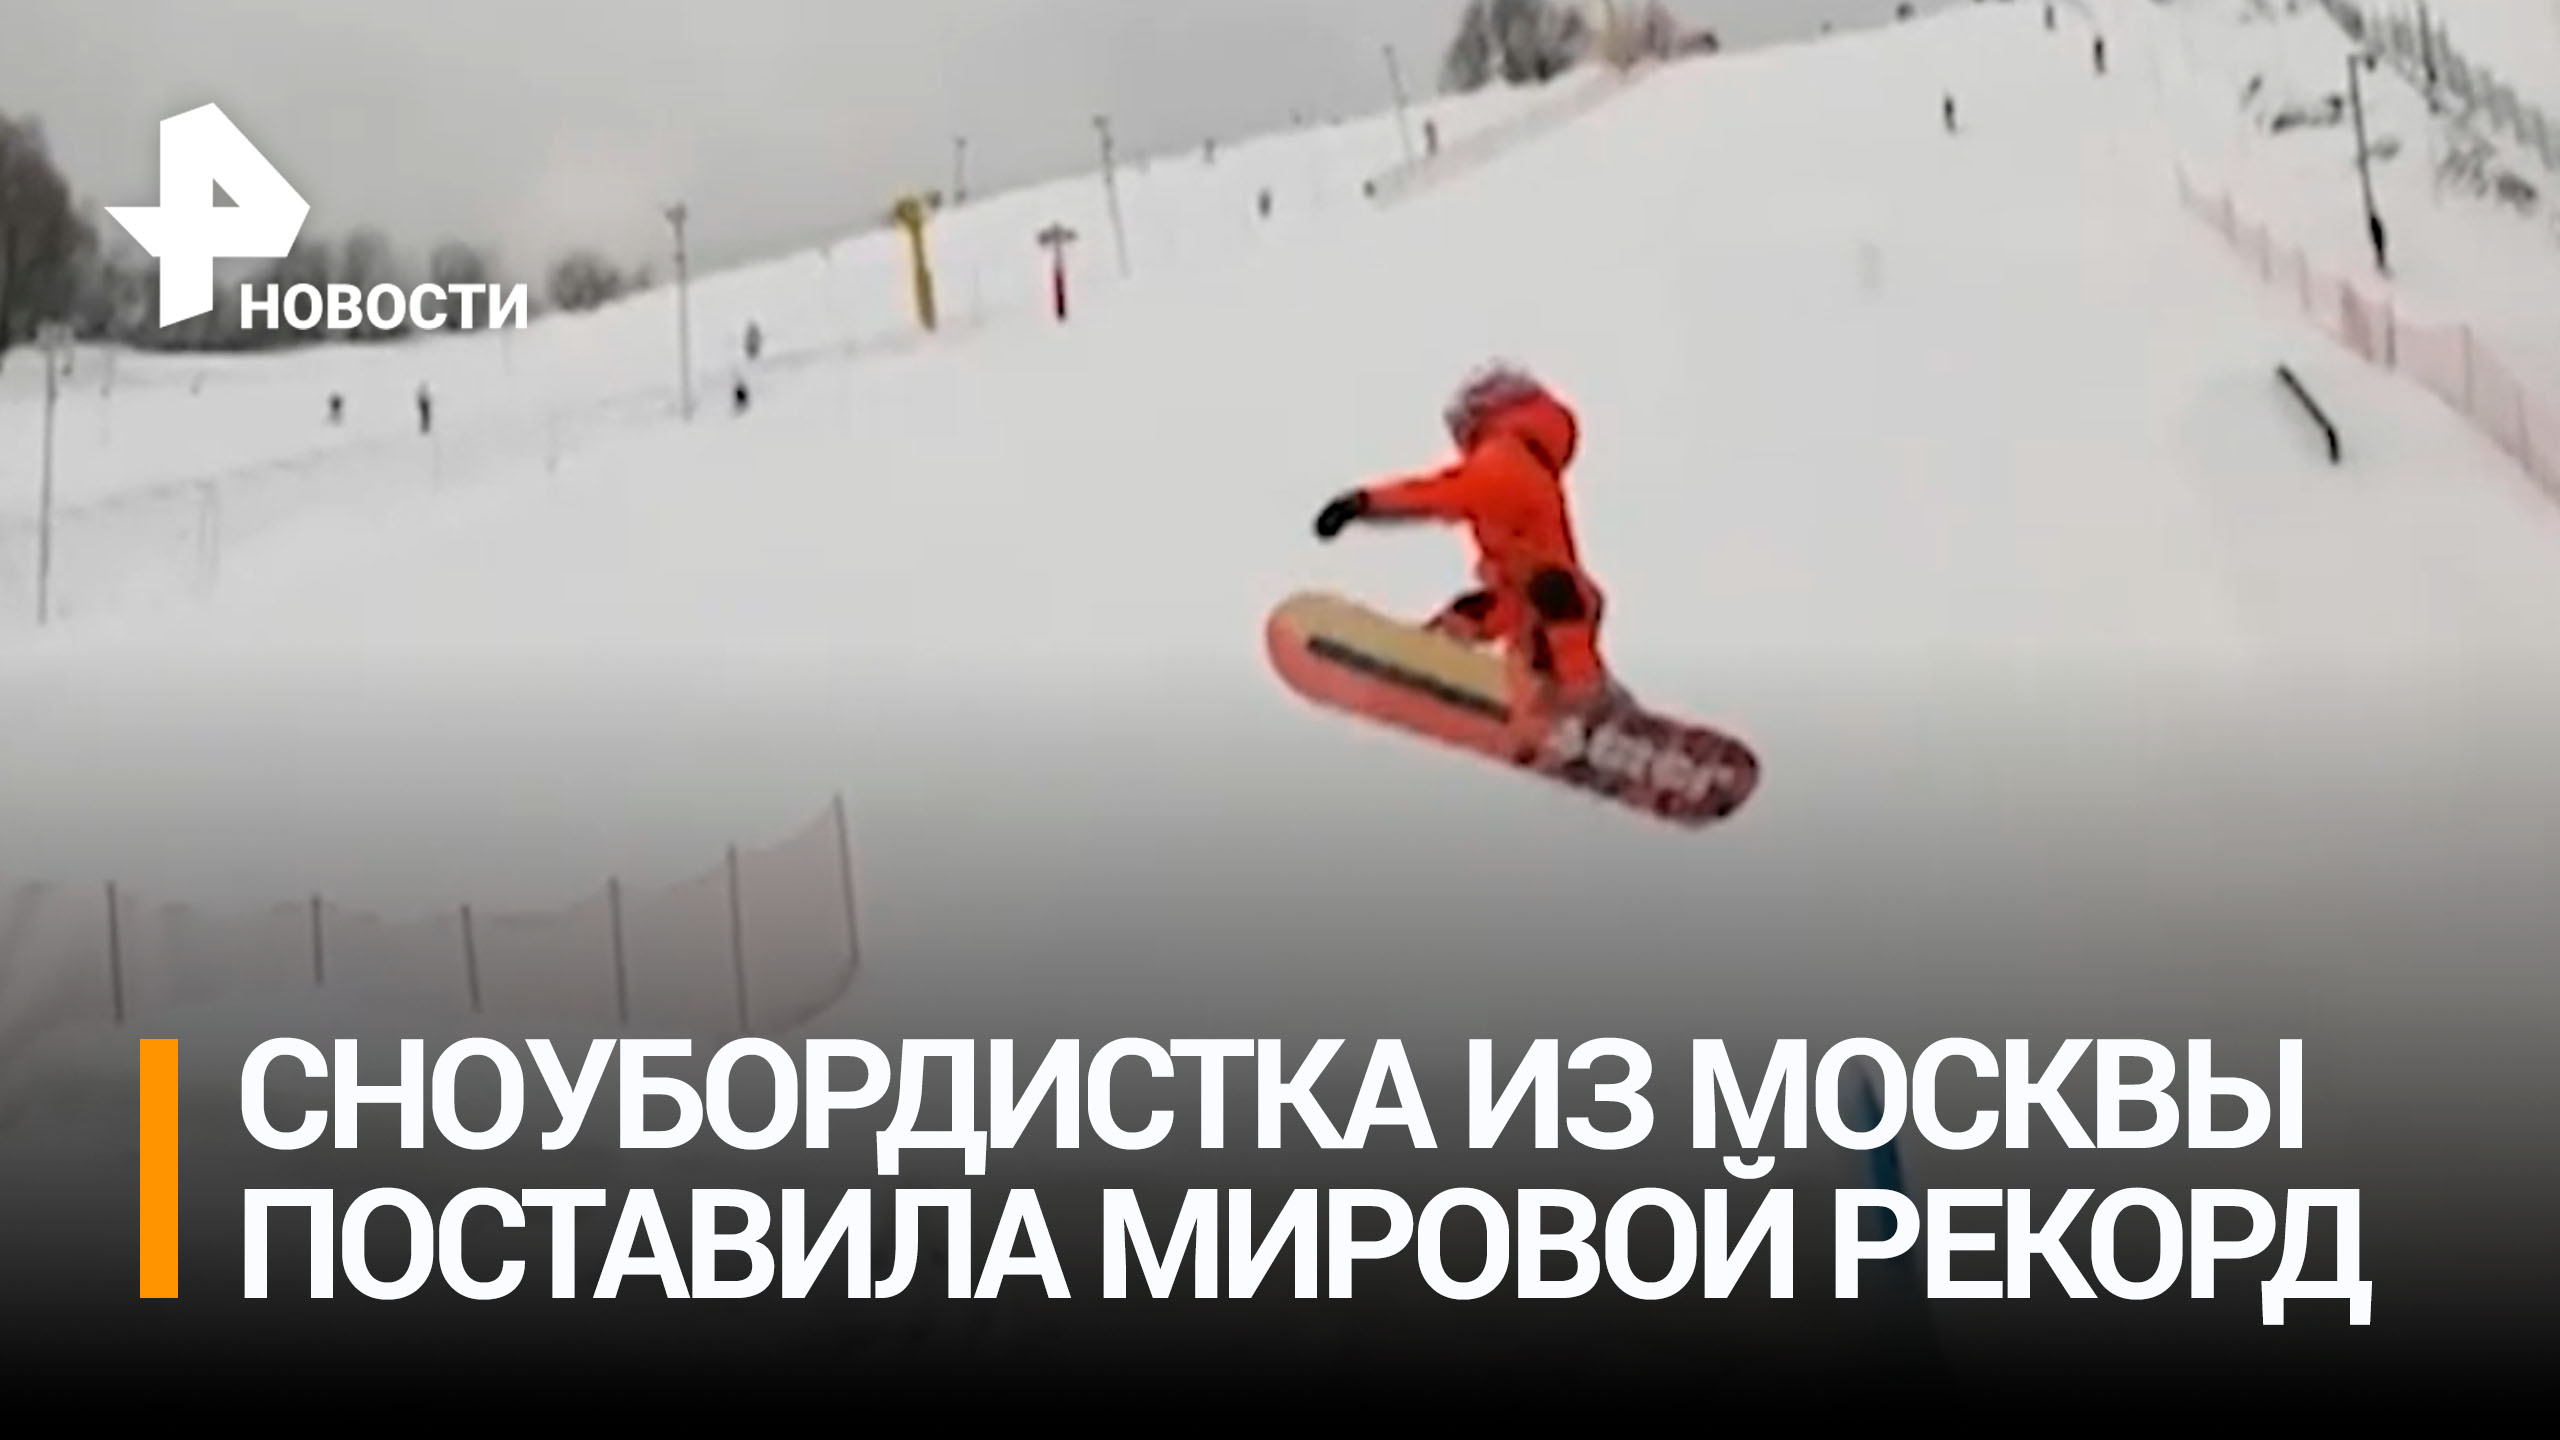 Девятилетняя сноубордистка из Москвы установила мировой рекорд / РЕН Новости